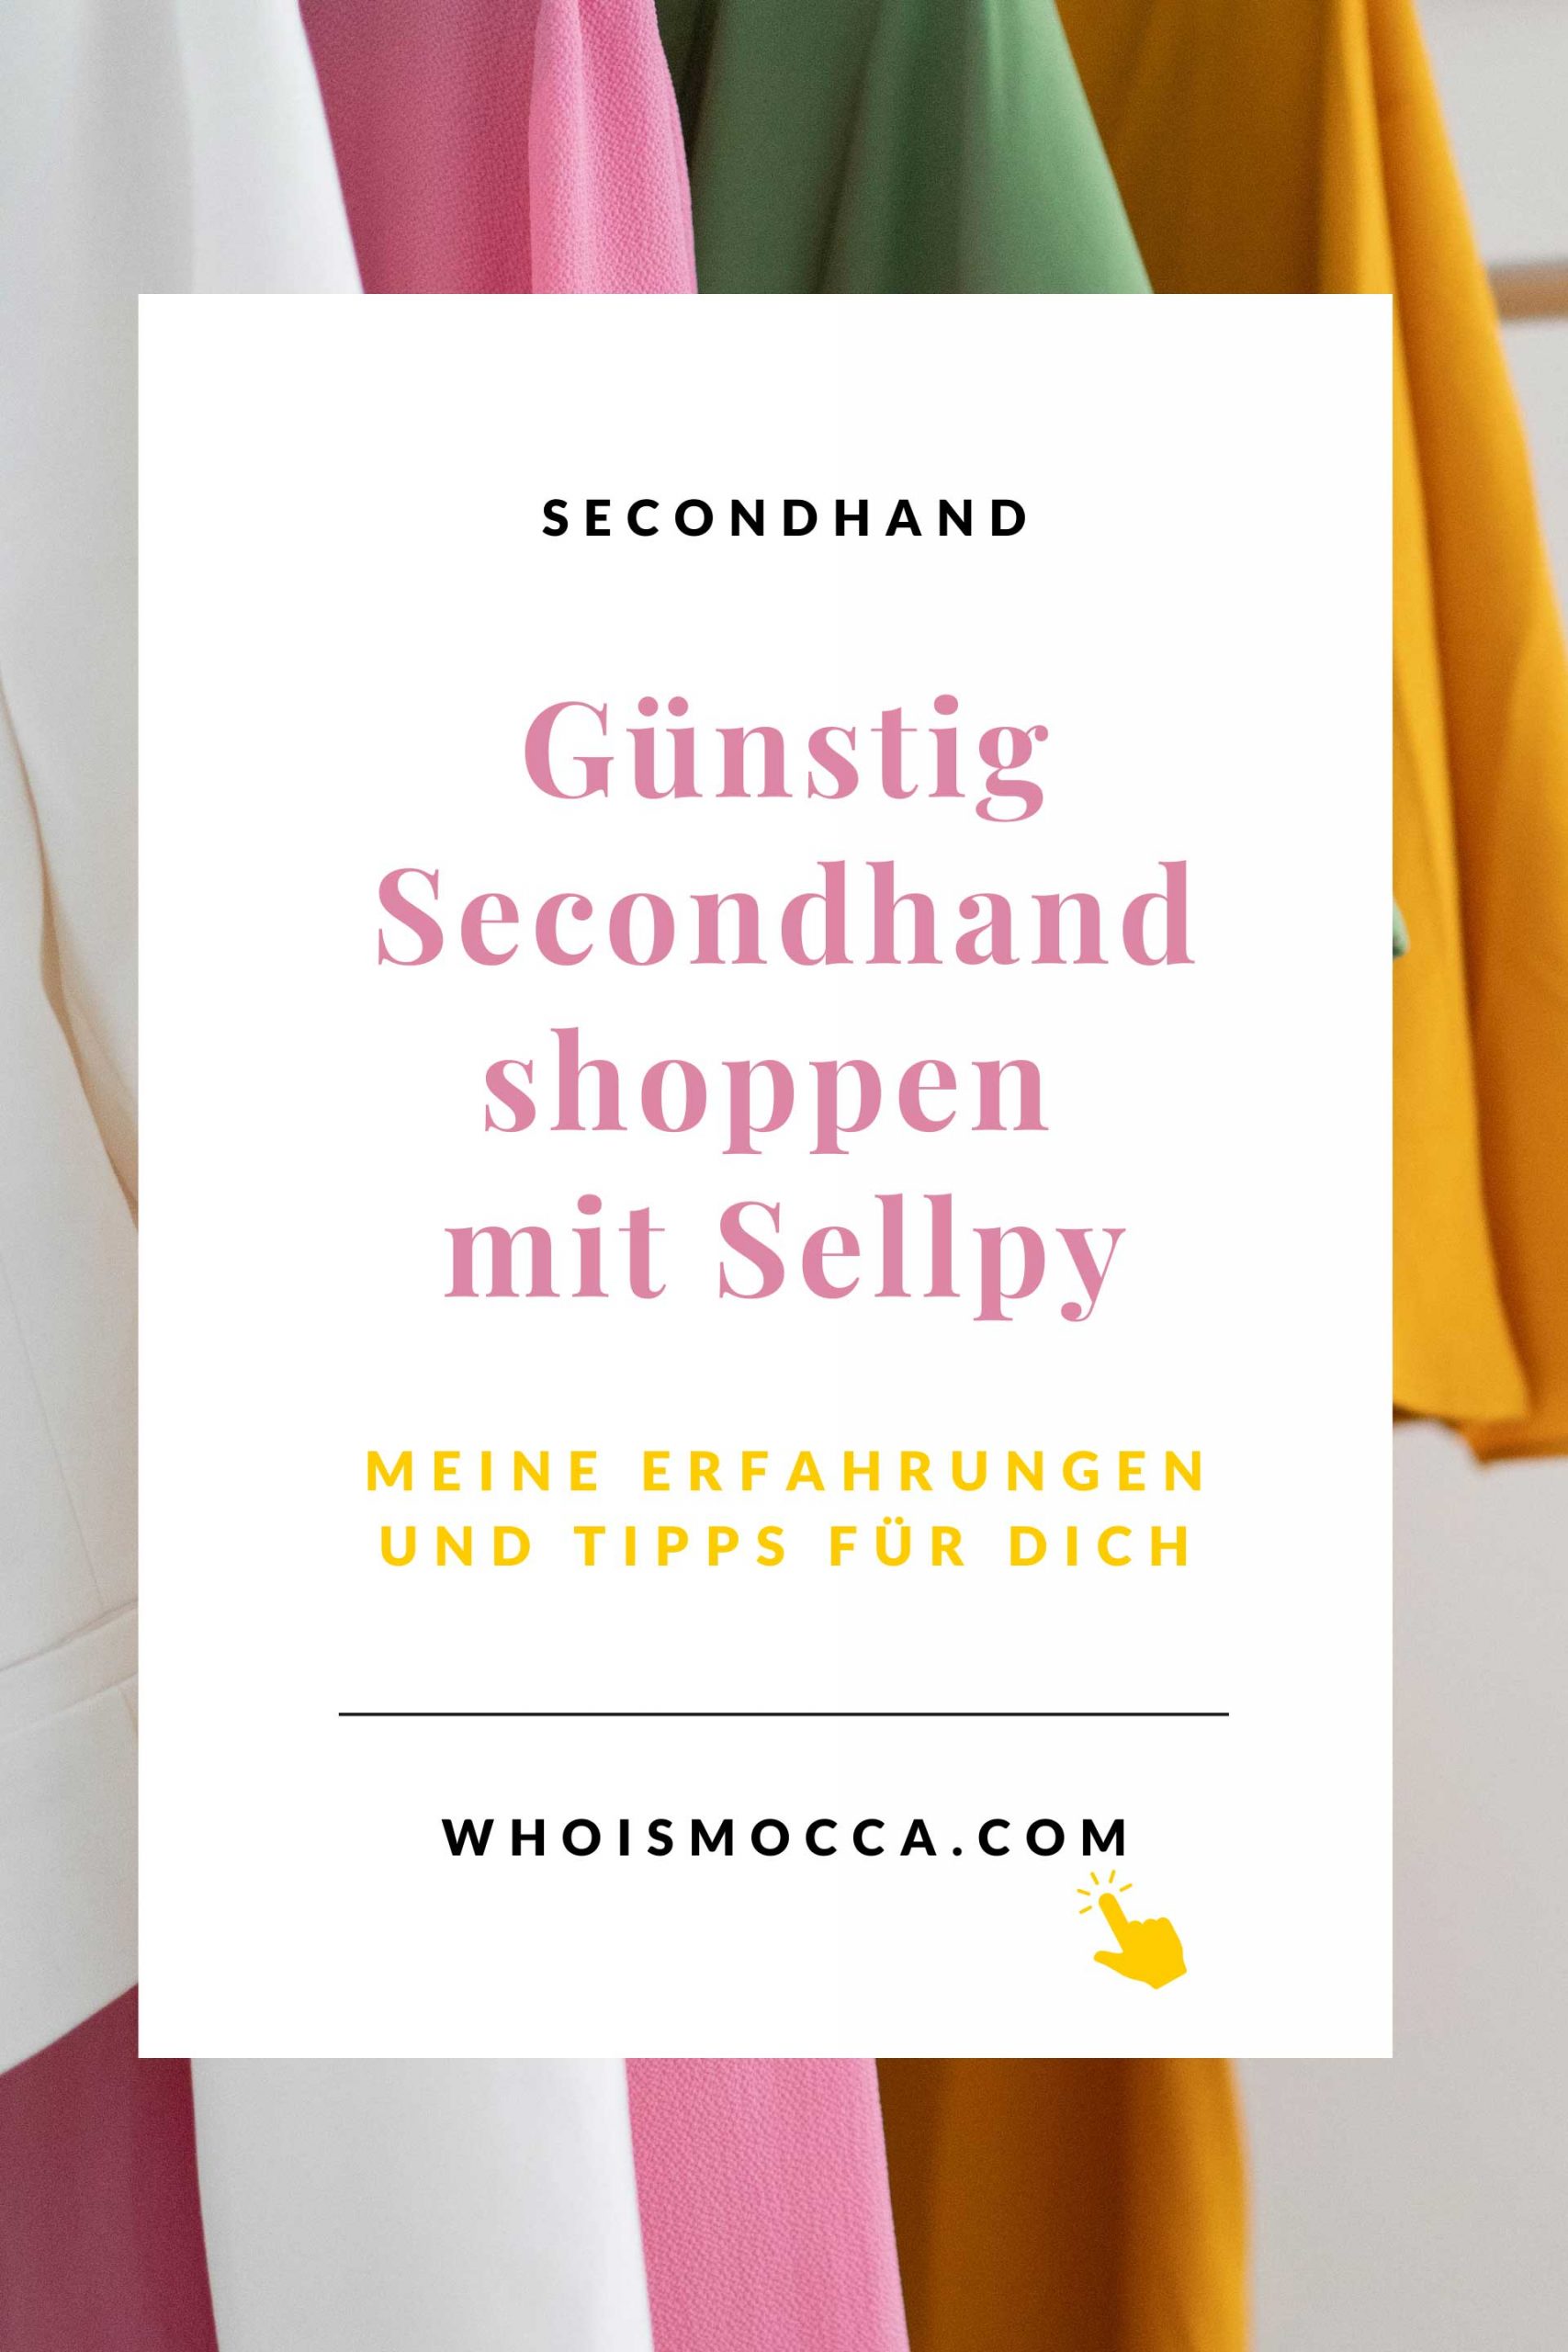 Ich liebe Secondhand Online Shopping. Als Mama kaufe ich besonders gerne für mein Kind ein, aber auch für mich persönlich. Sellpy ist eine tolle Plattform dafür, im Blogbeitrag findest du meinen ausführlichen Erfahrungsbericht dazu.